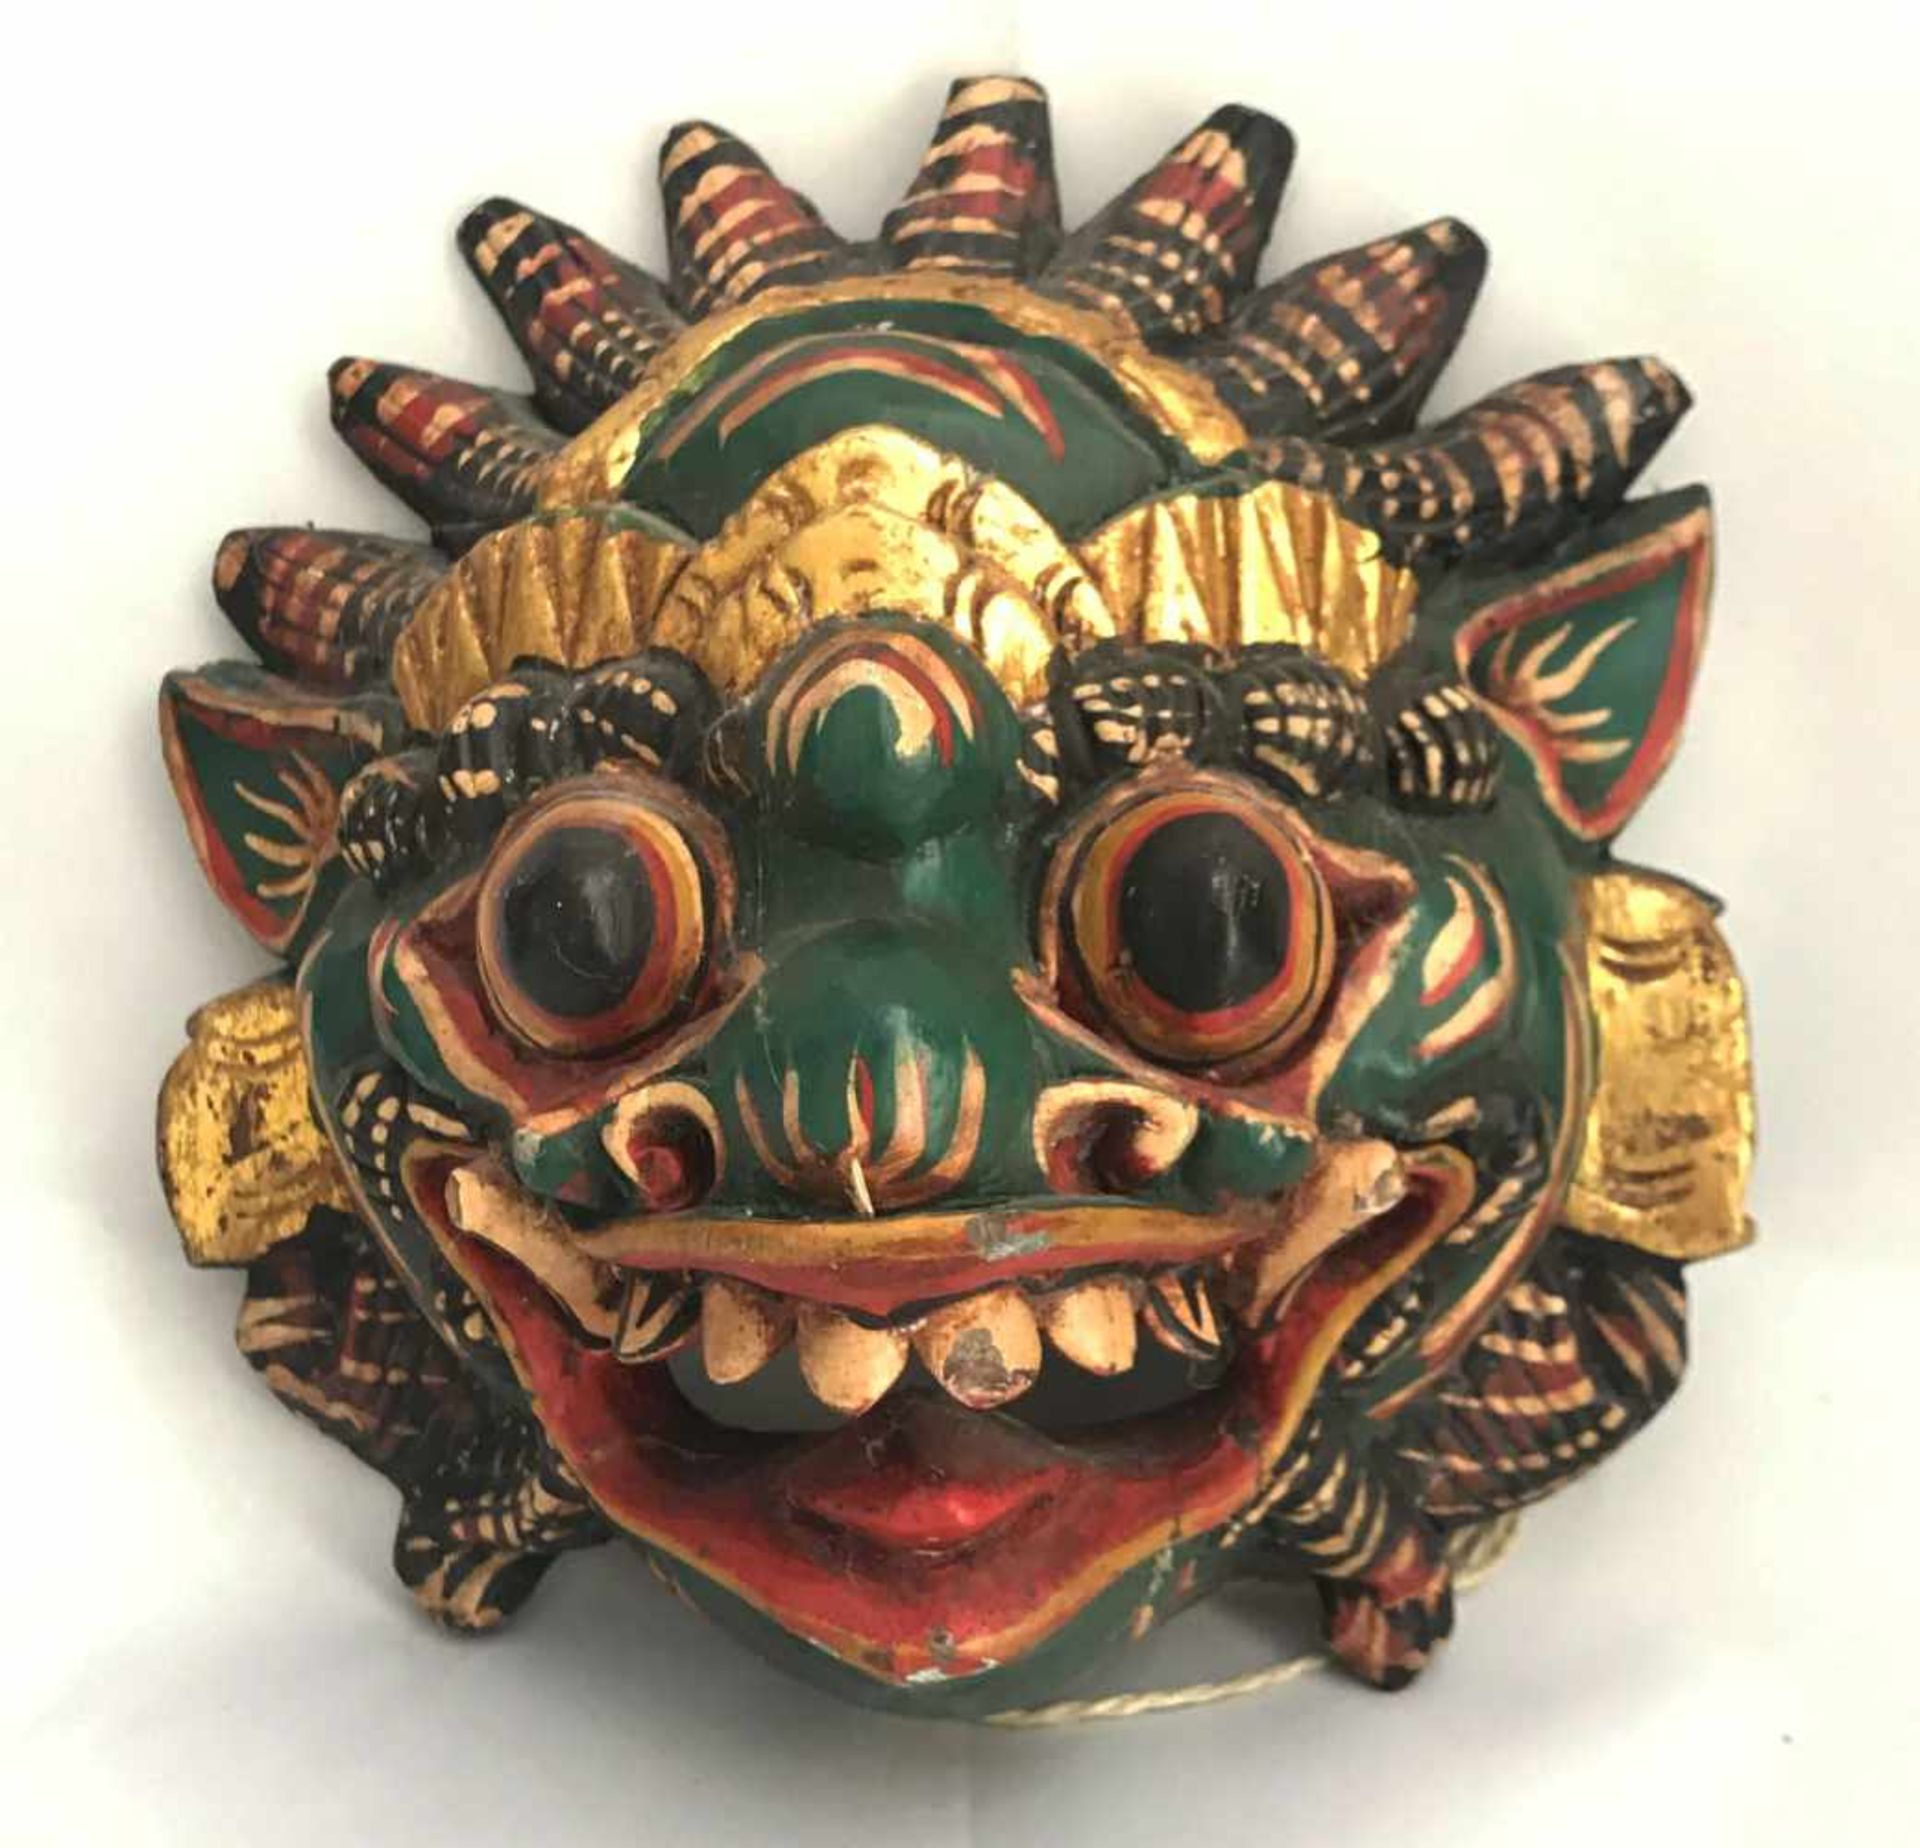 2 alte indonesische Masken, wohl Bali, Holz, farbig gefasst, Altersspuren, 52 x 54 cm sowie 22 x - Bild 2 aus 4